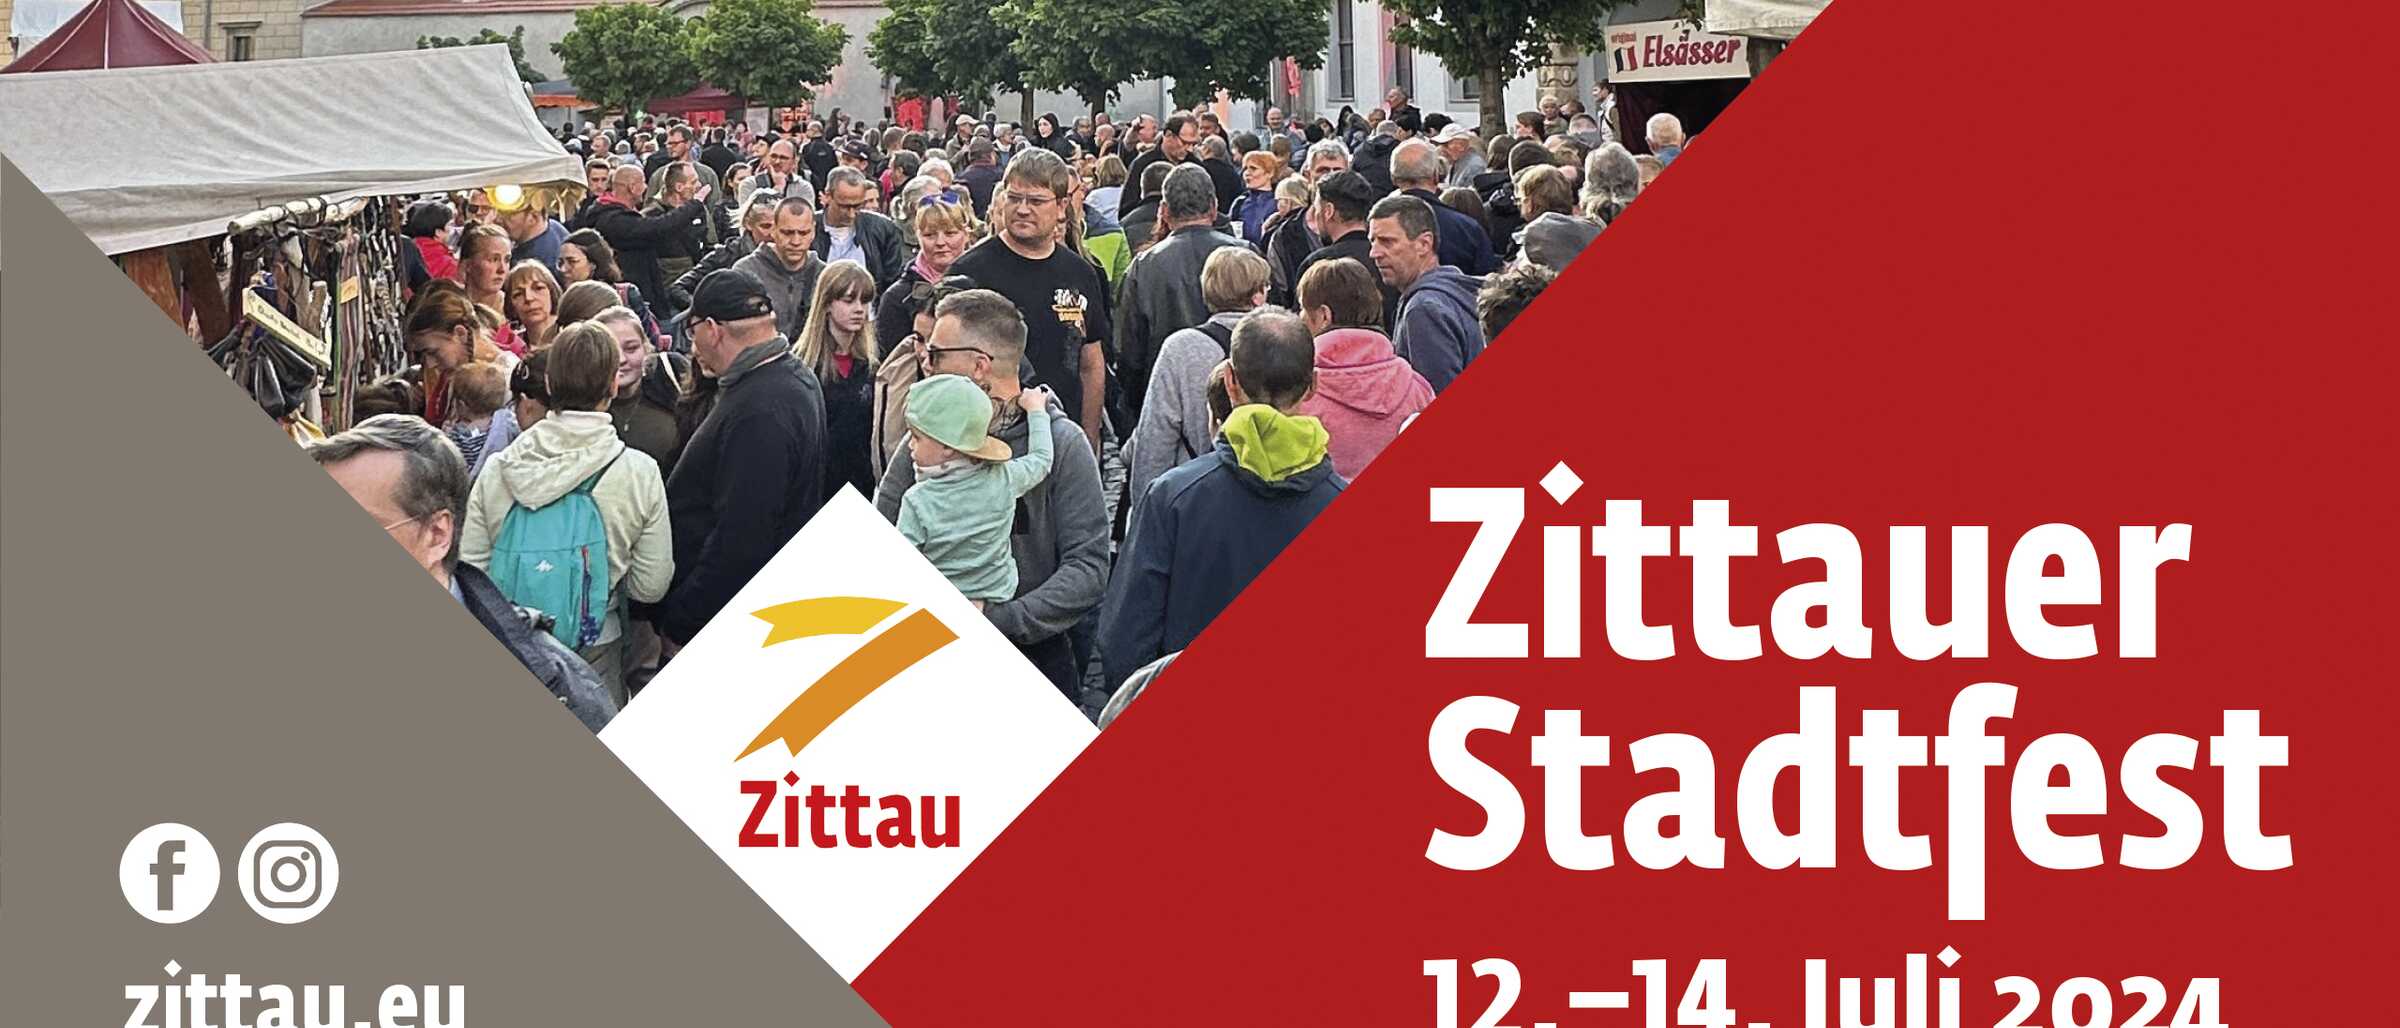 Zittauer Stadtfest vom 12.-14. Juni 2024